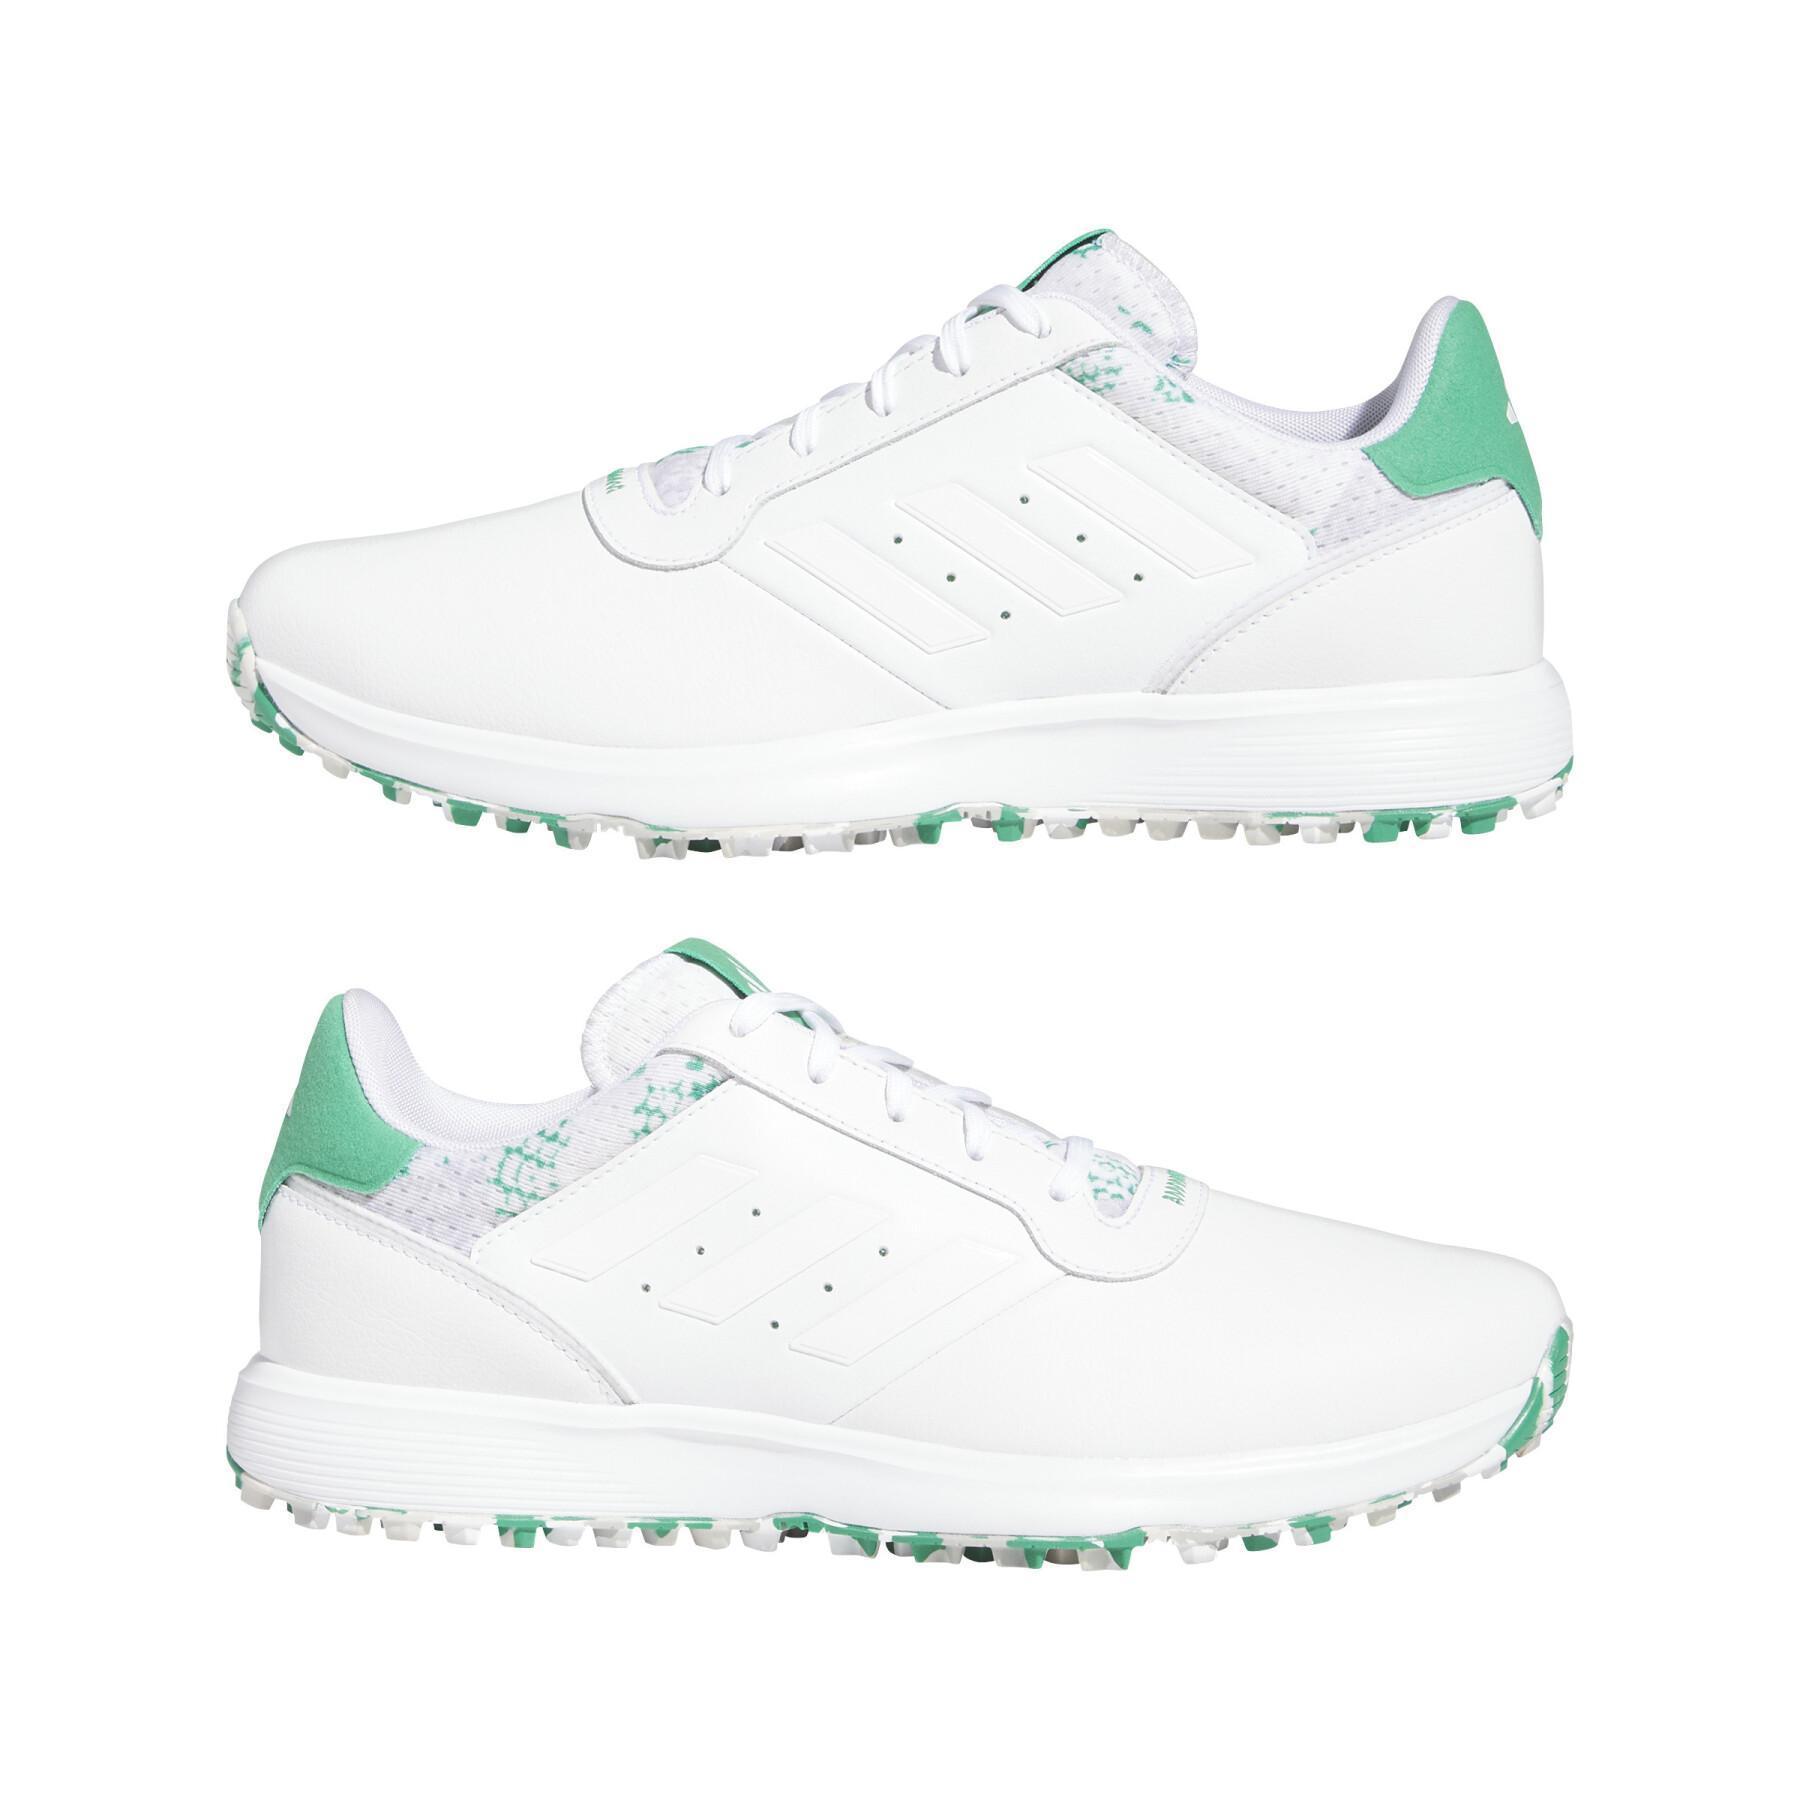 Spikeless golf shoes adidas S2G Sl 23